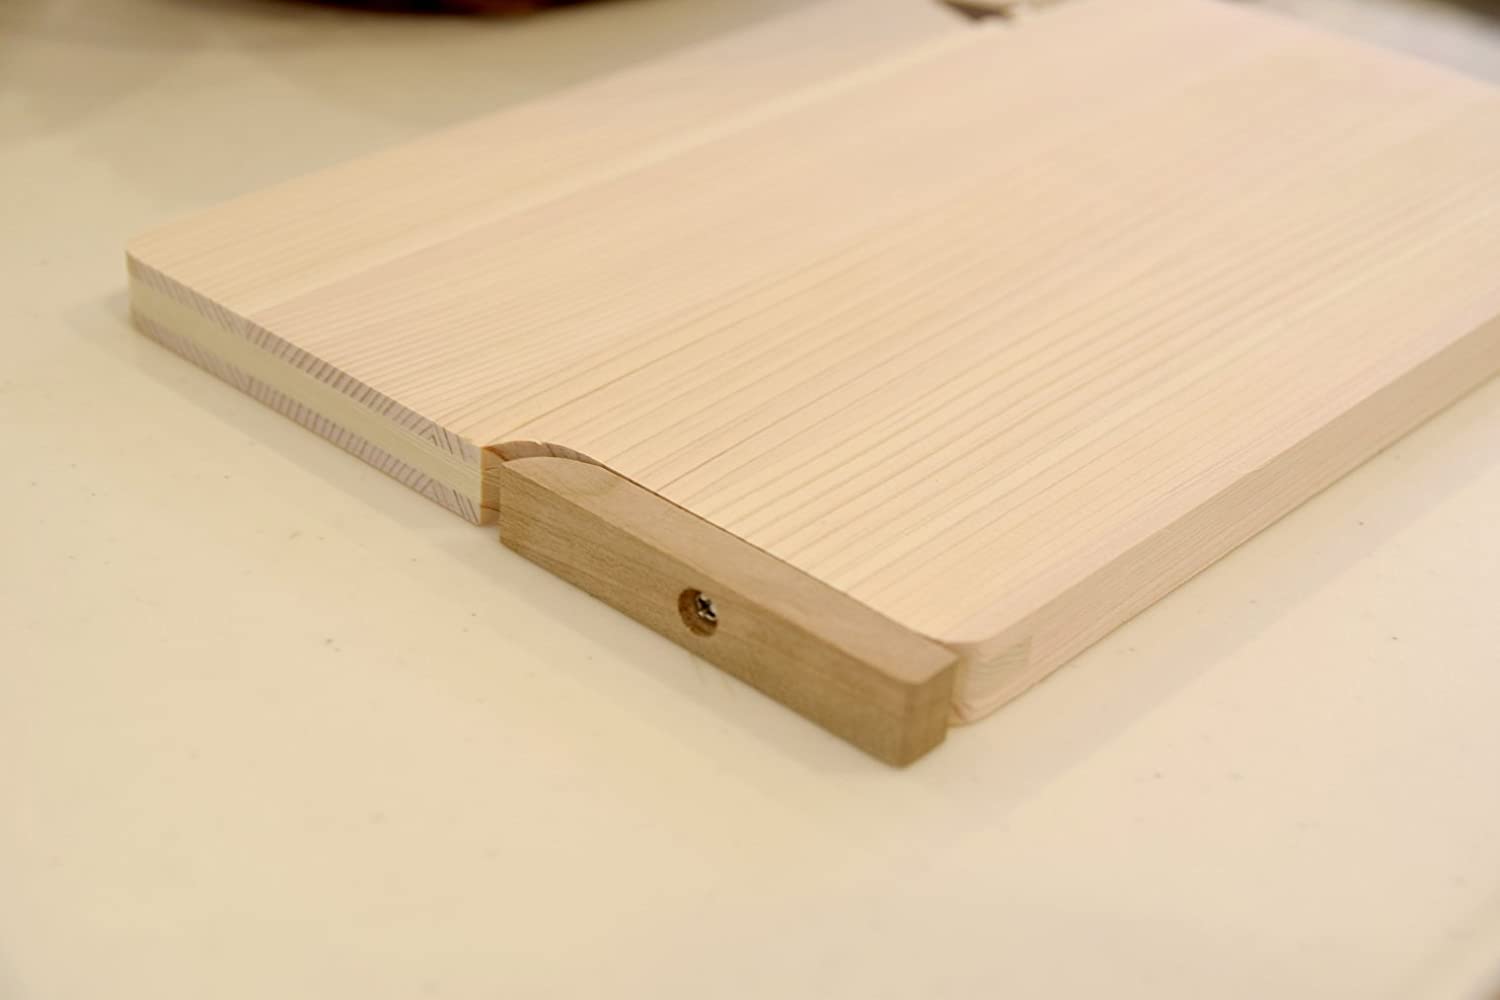 ウメザワ 木製まな板 東濃ひのき 自立スタンド式 27×18×厚さ1.5cm 日本製